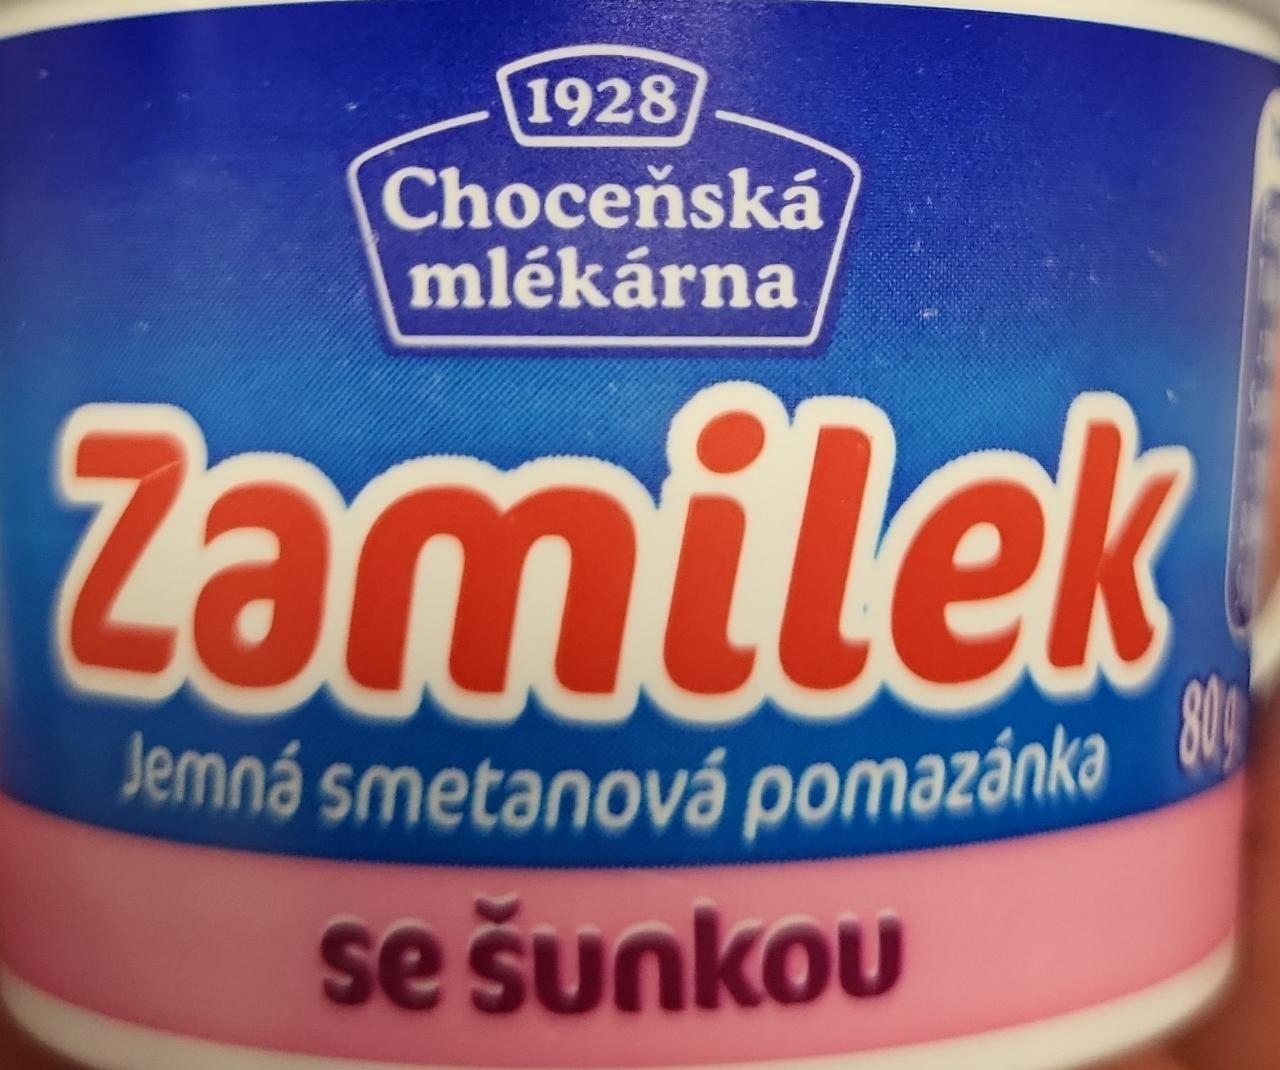 Фото - Термолізована вершкова намазка з шинкою Zemilek Choceňská mlékárna